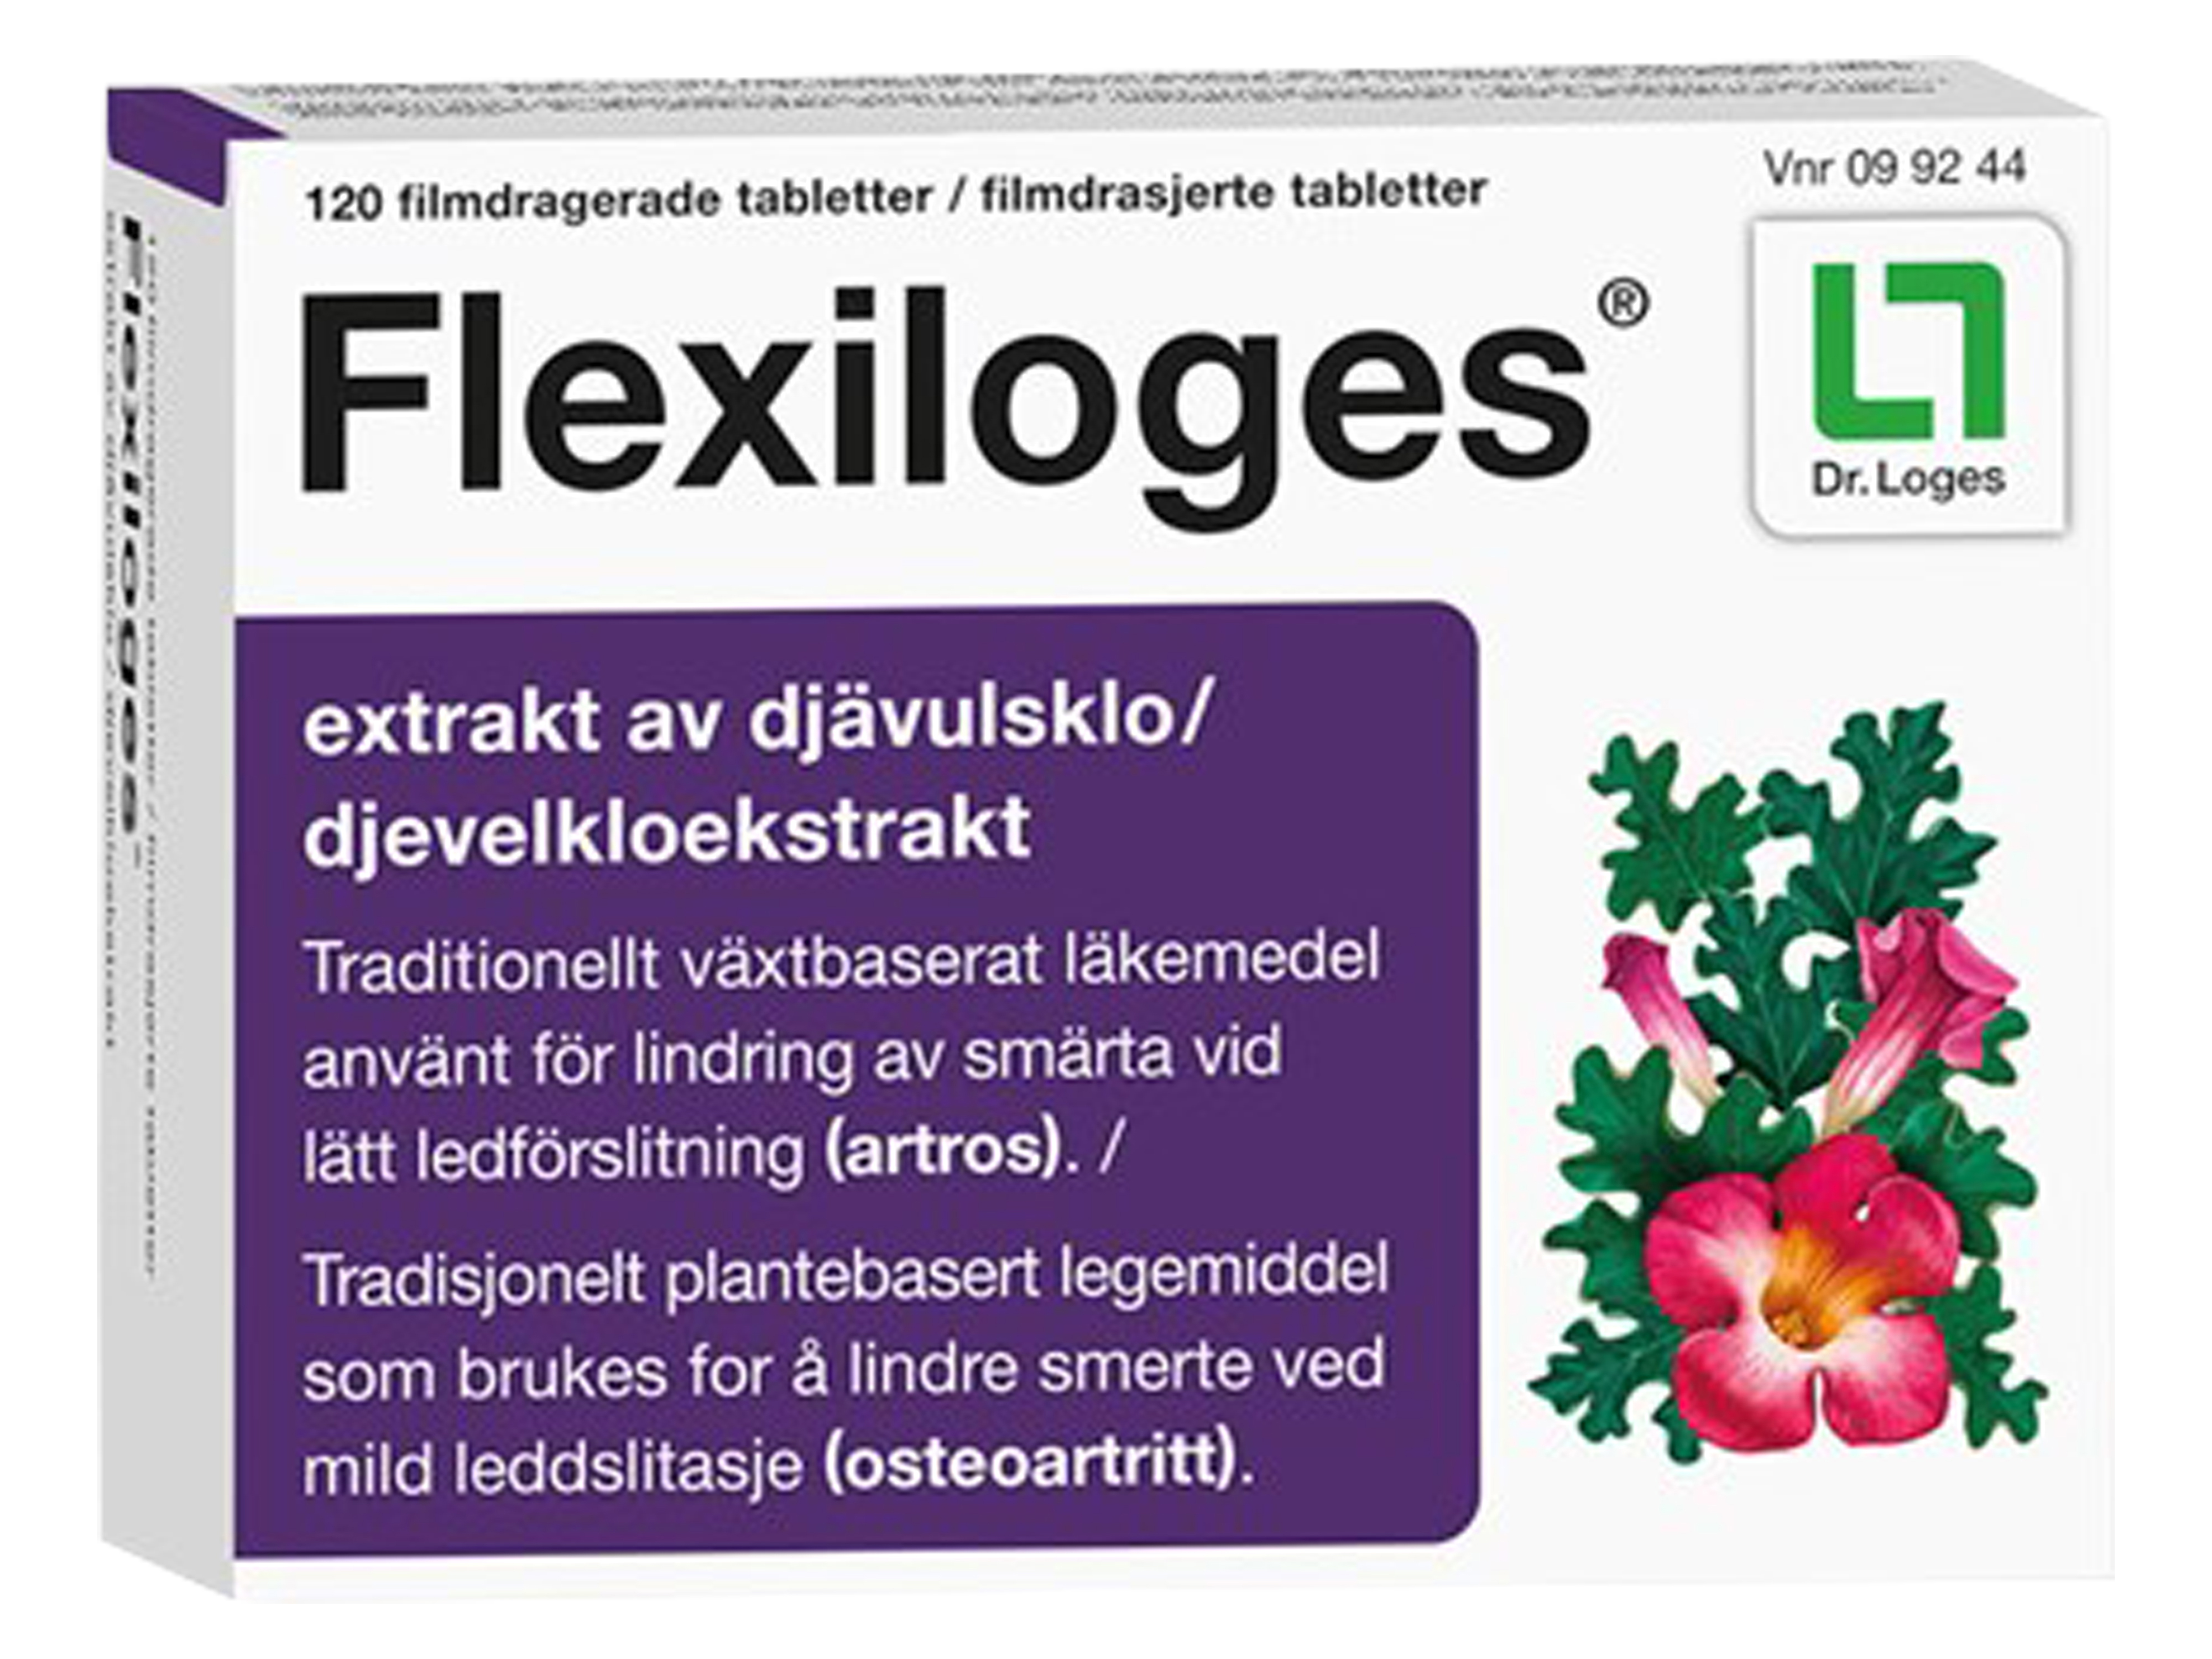 Flexiloges tab, 120 tabletter